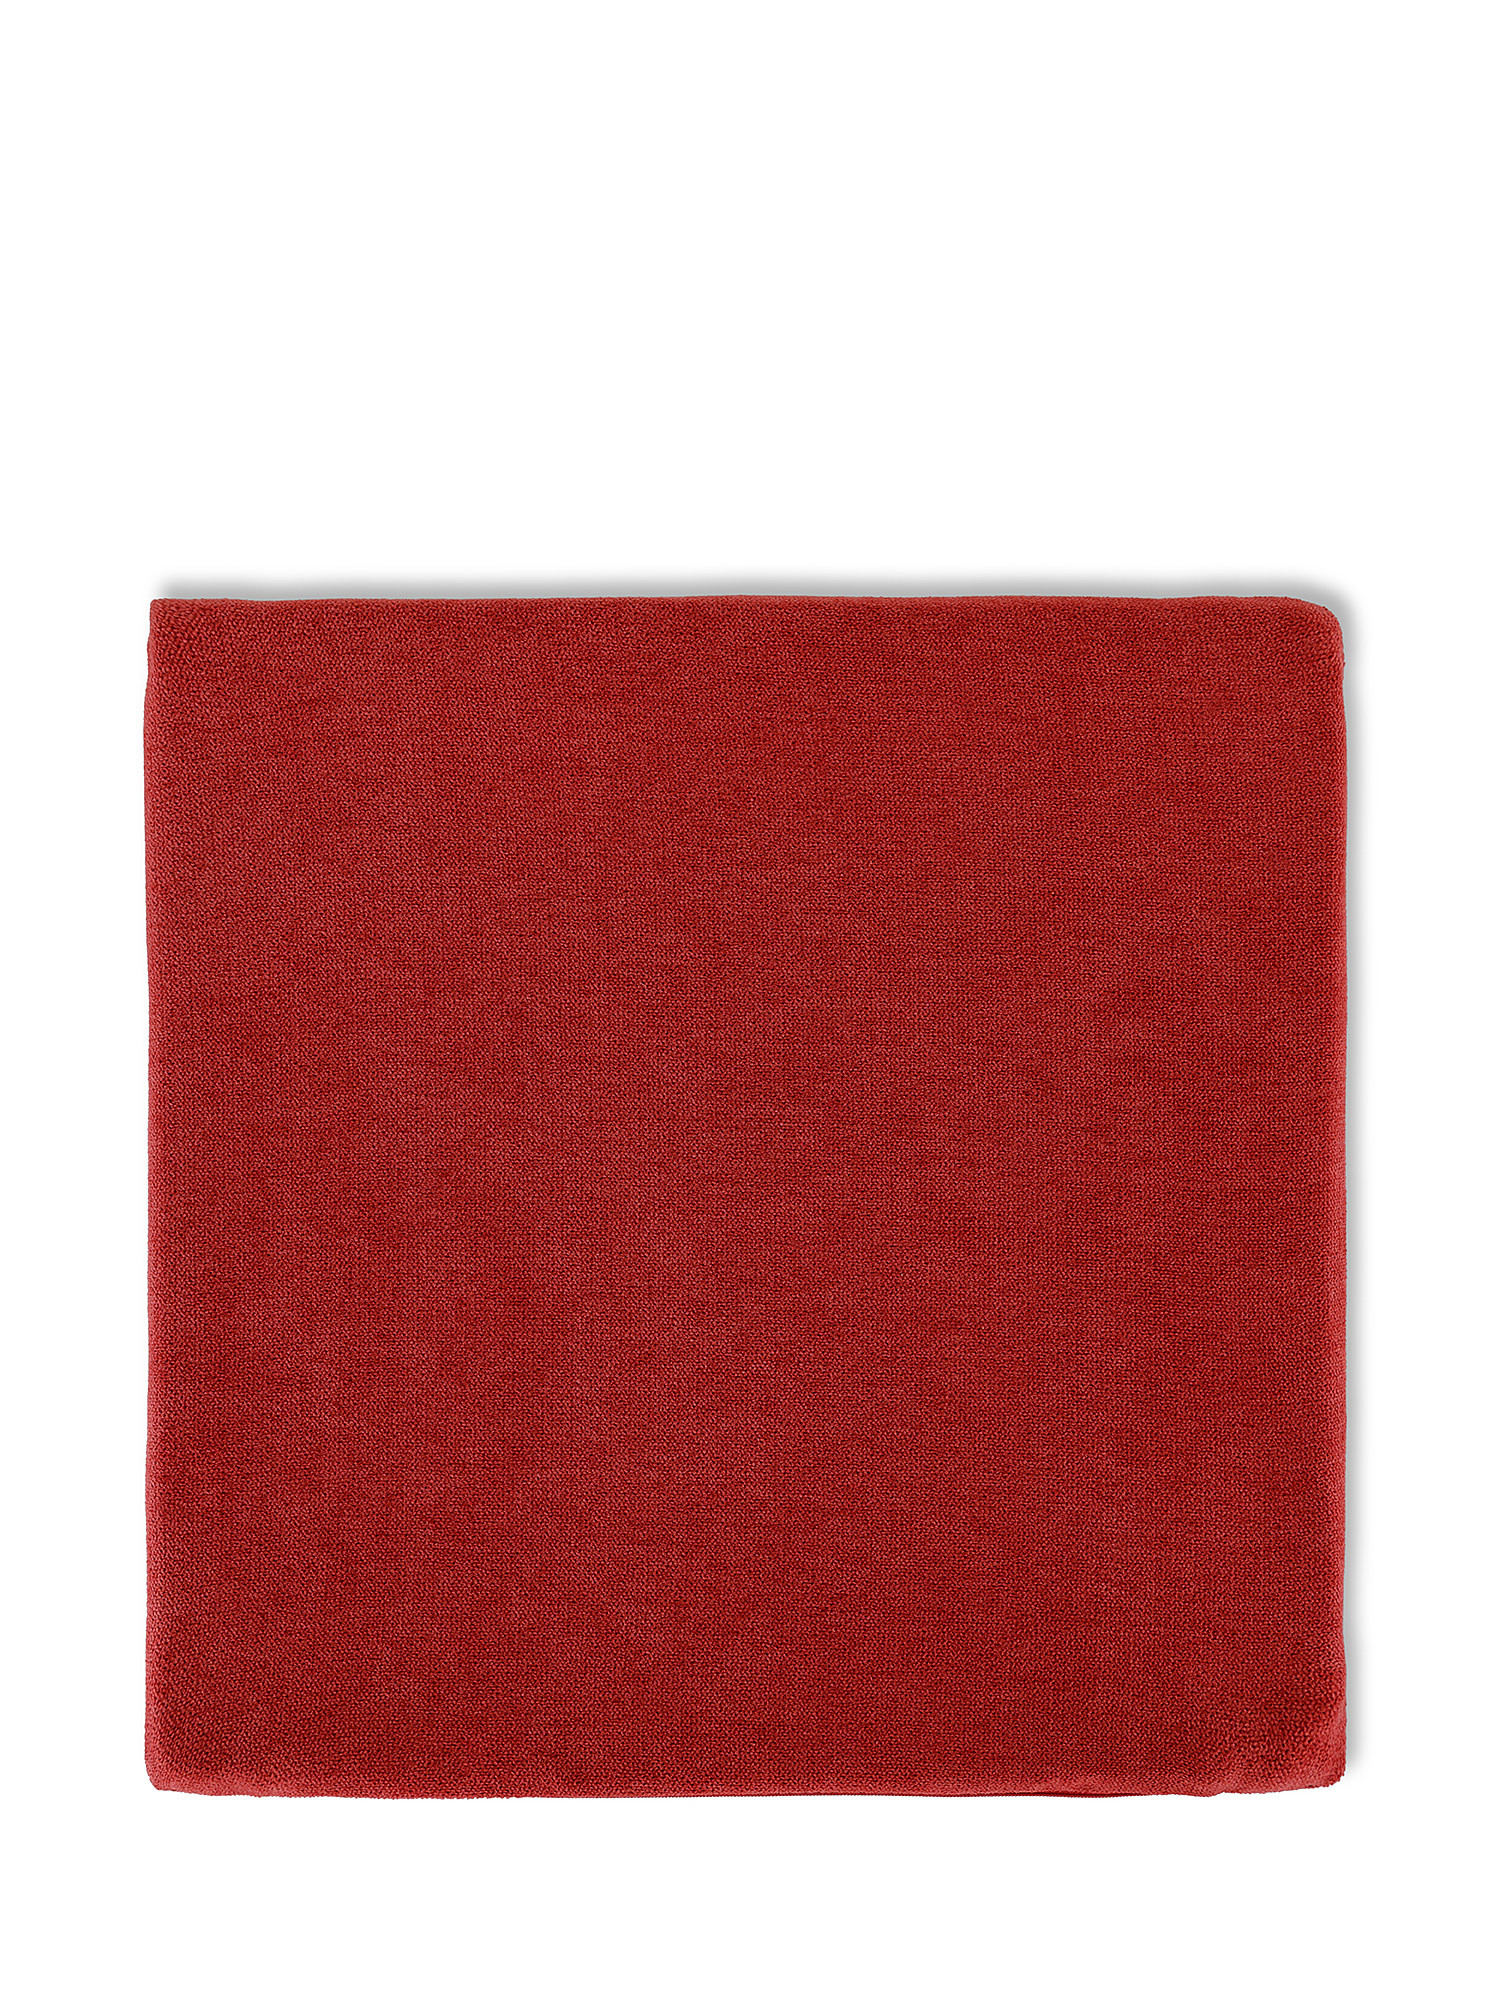 Cuscino da sedia in cotone tinta unita, Rosso, large image number 0